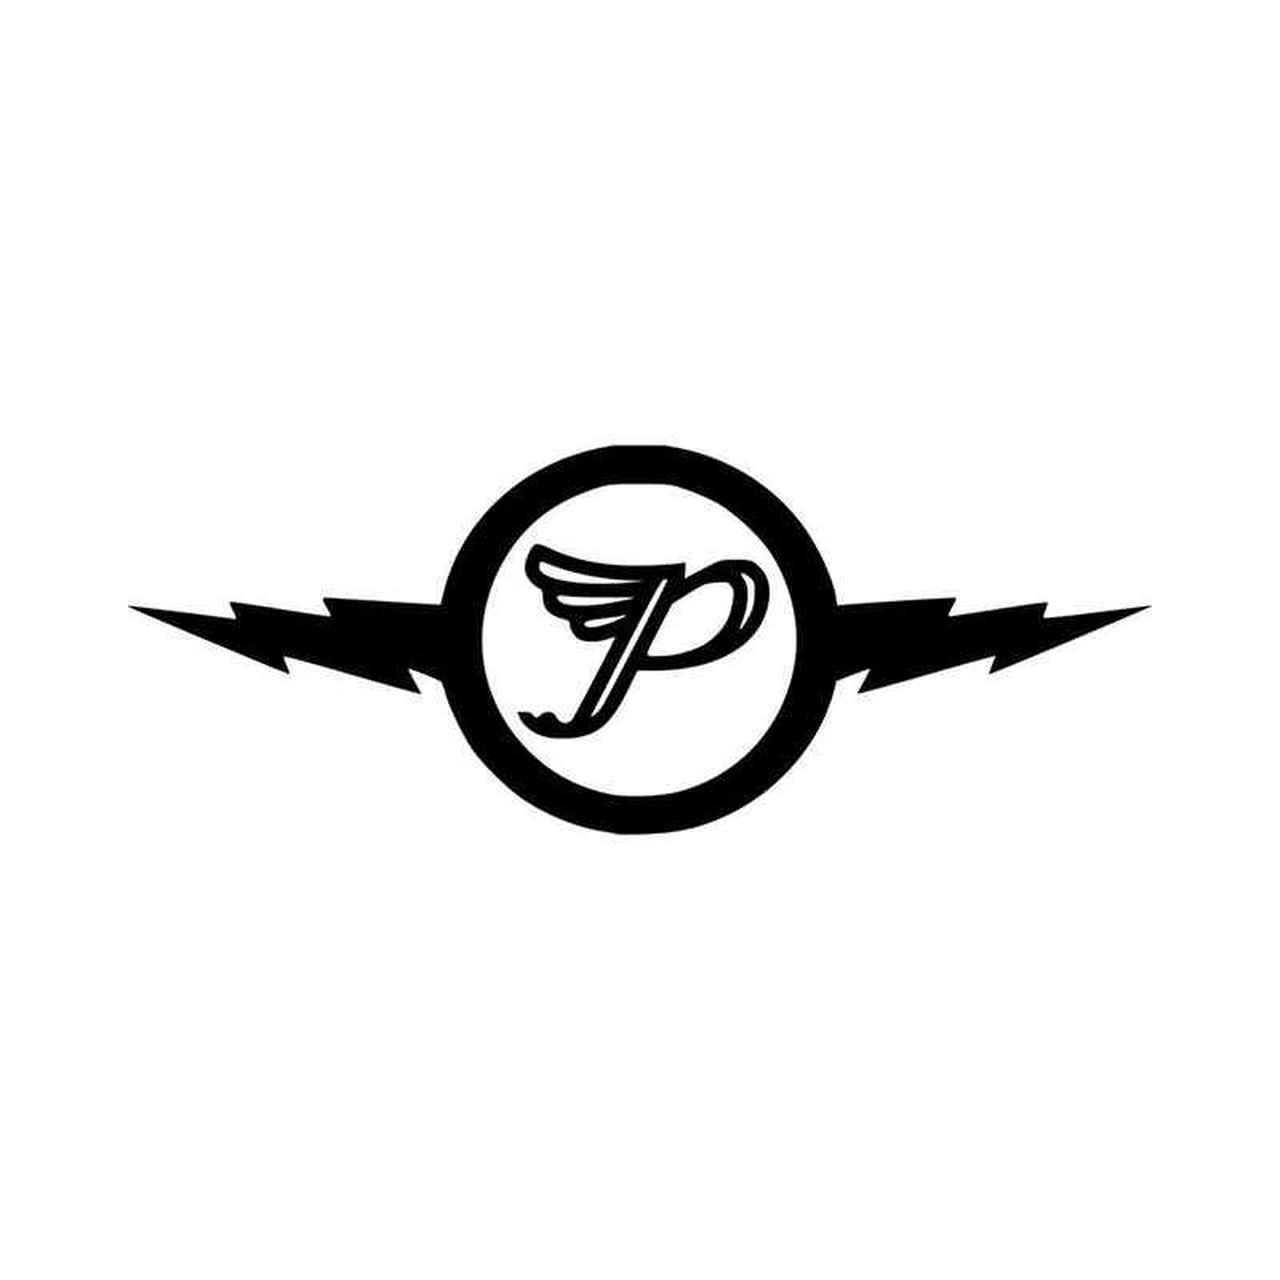 Pixies Logo - The Pixies Lightning Bolt Band Logo Vinyl Decal Sticker